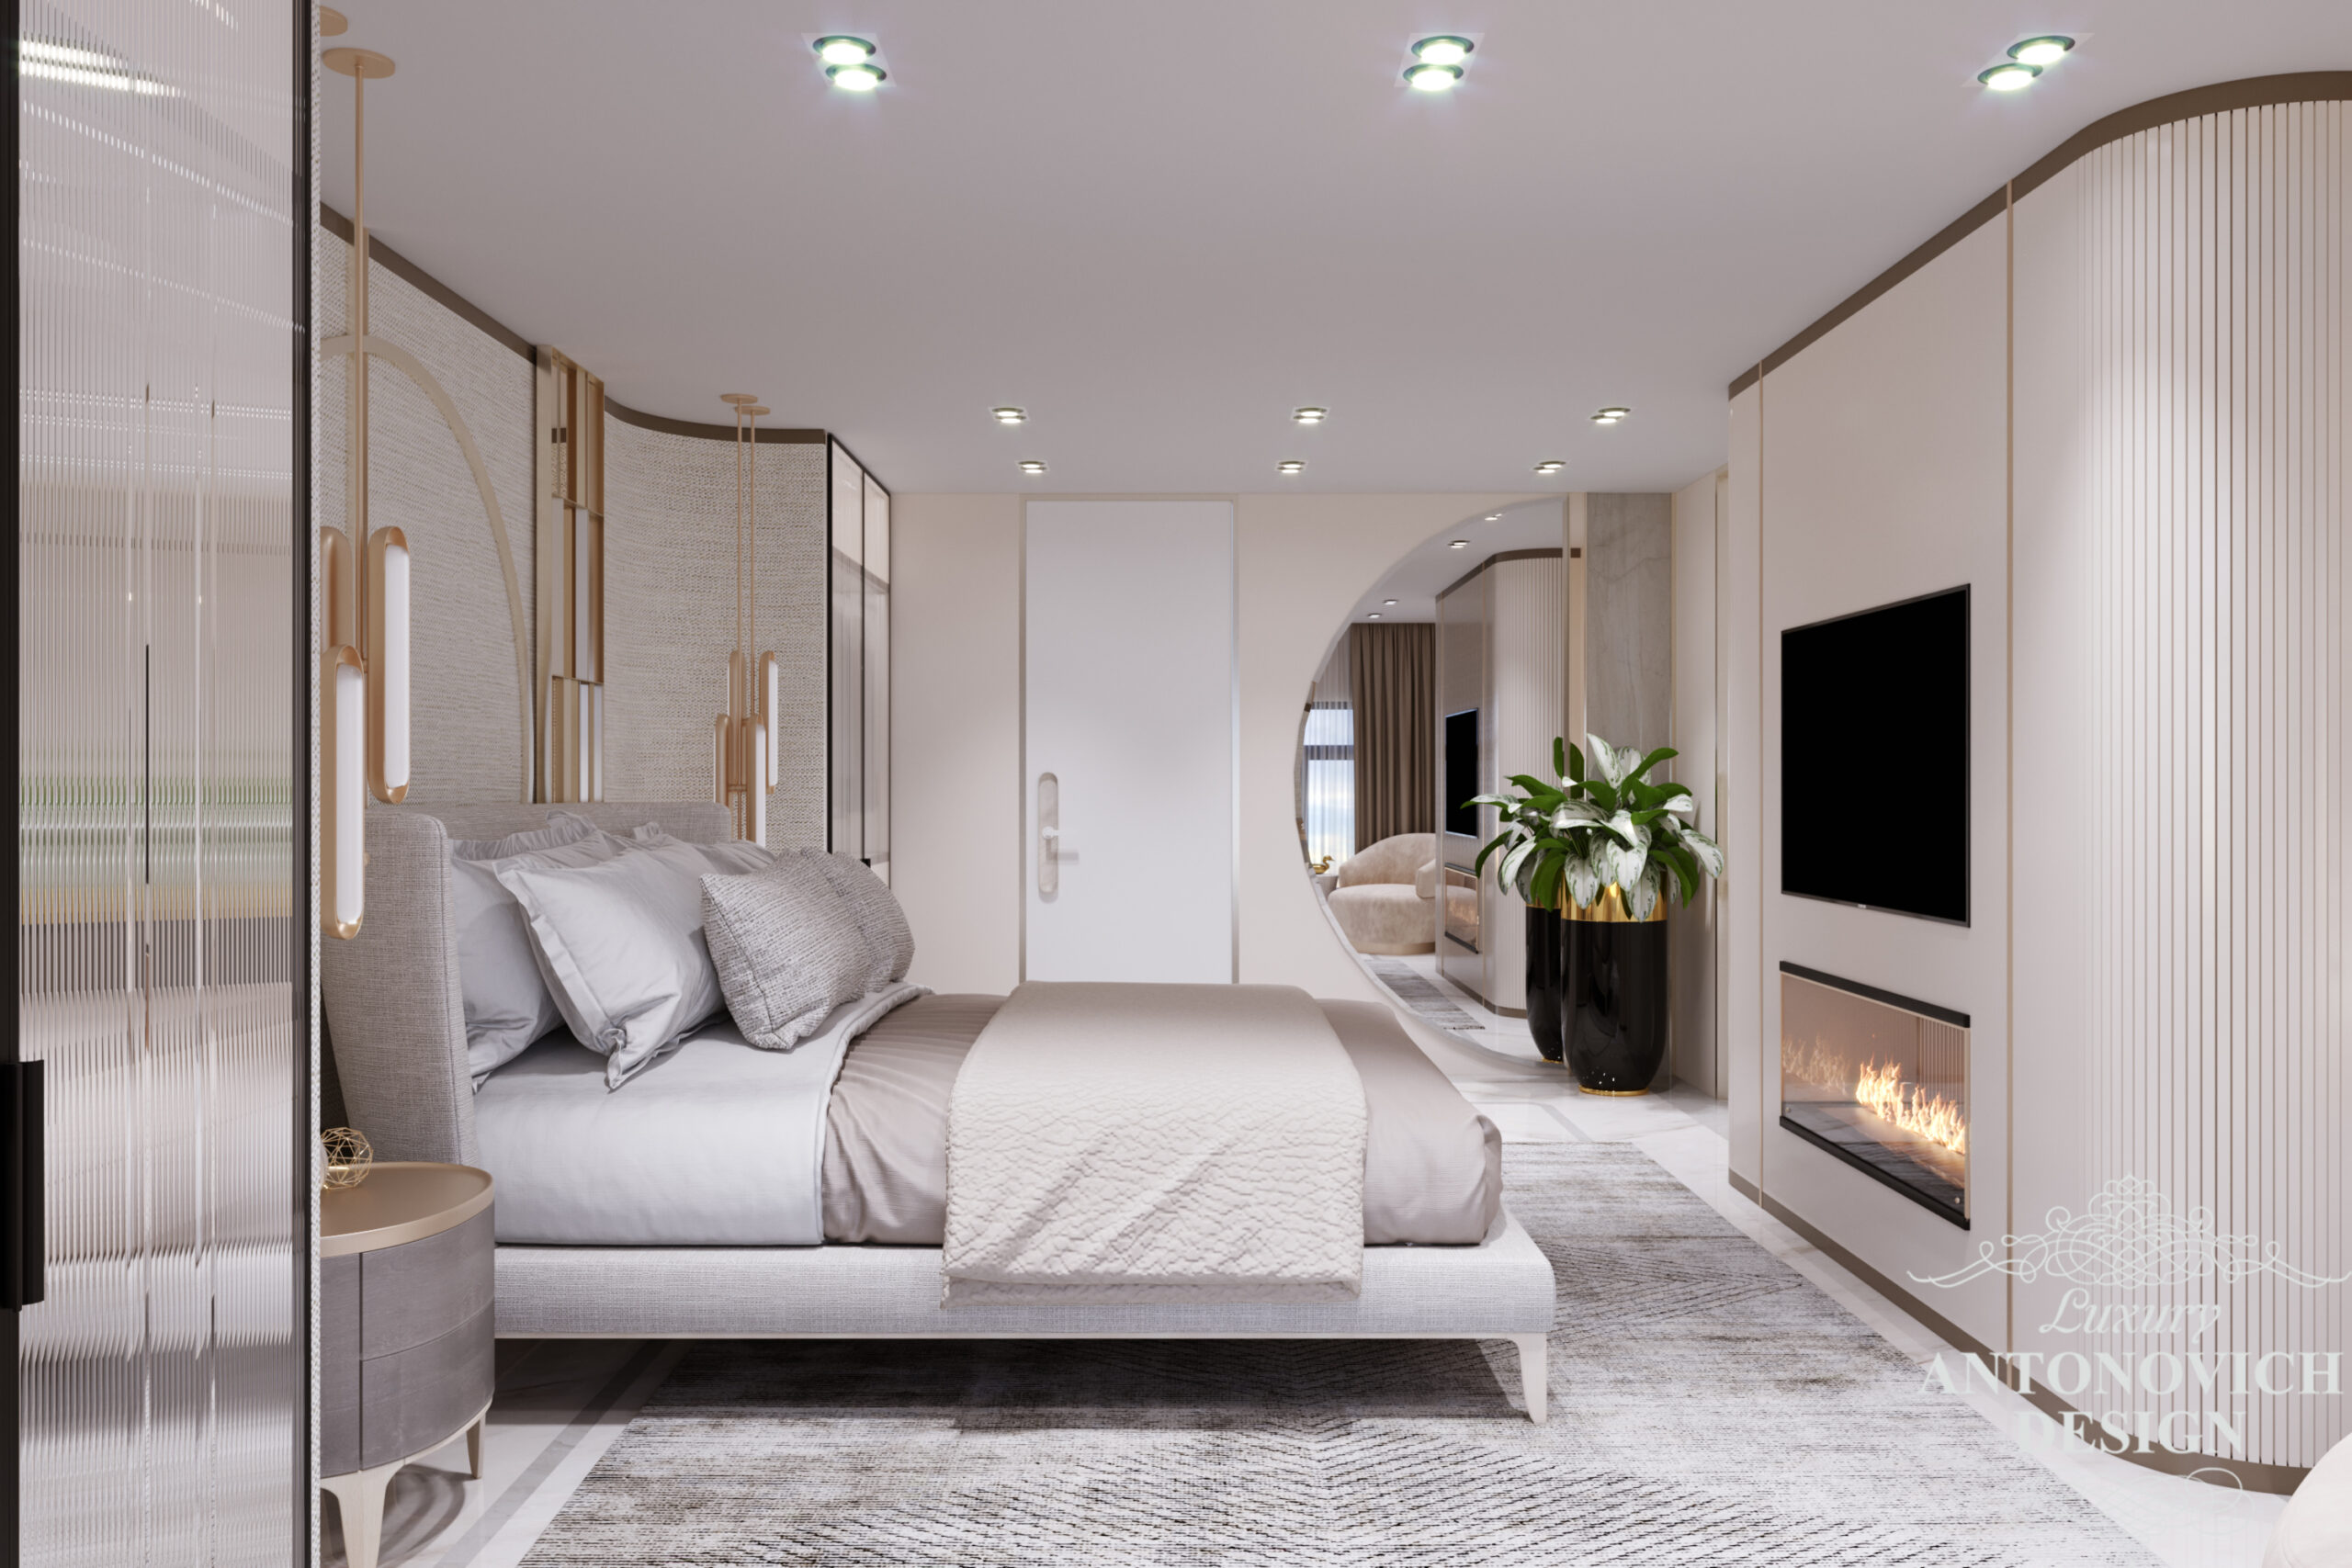 Современный дизайн спальни в светлой лаконичной палитре. камин в интерьере спальни хозяев в проекте частного дома